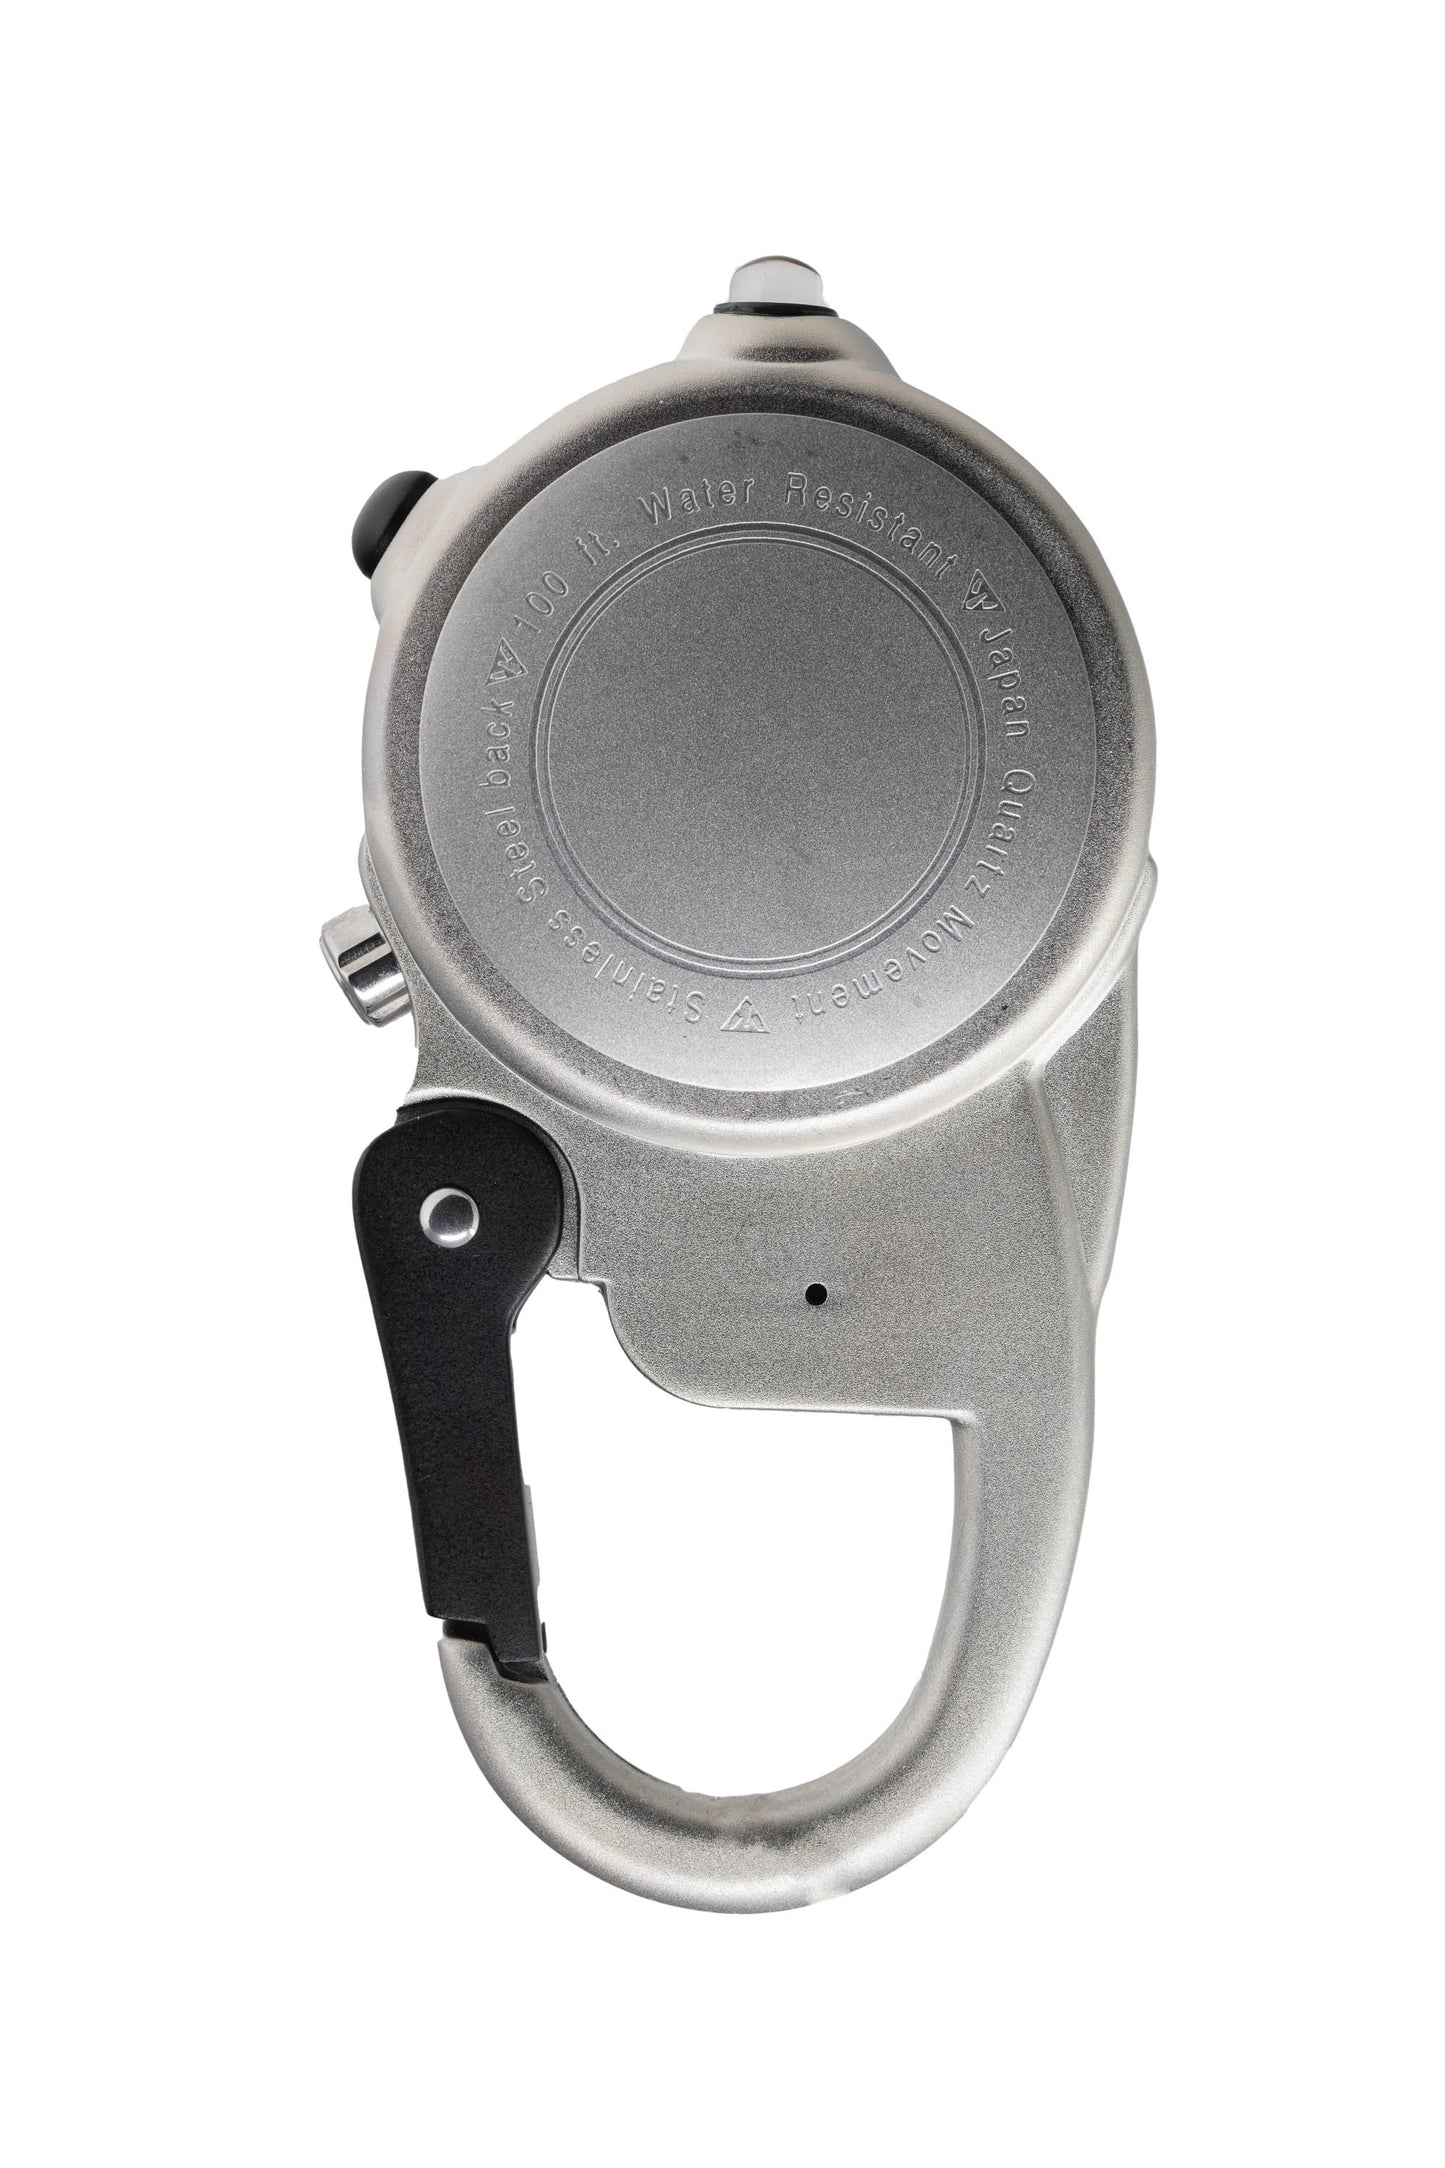 Miniclip Microlight - Silver Case Cream Dial